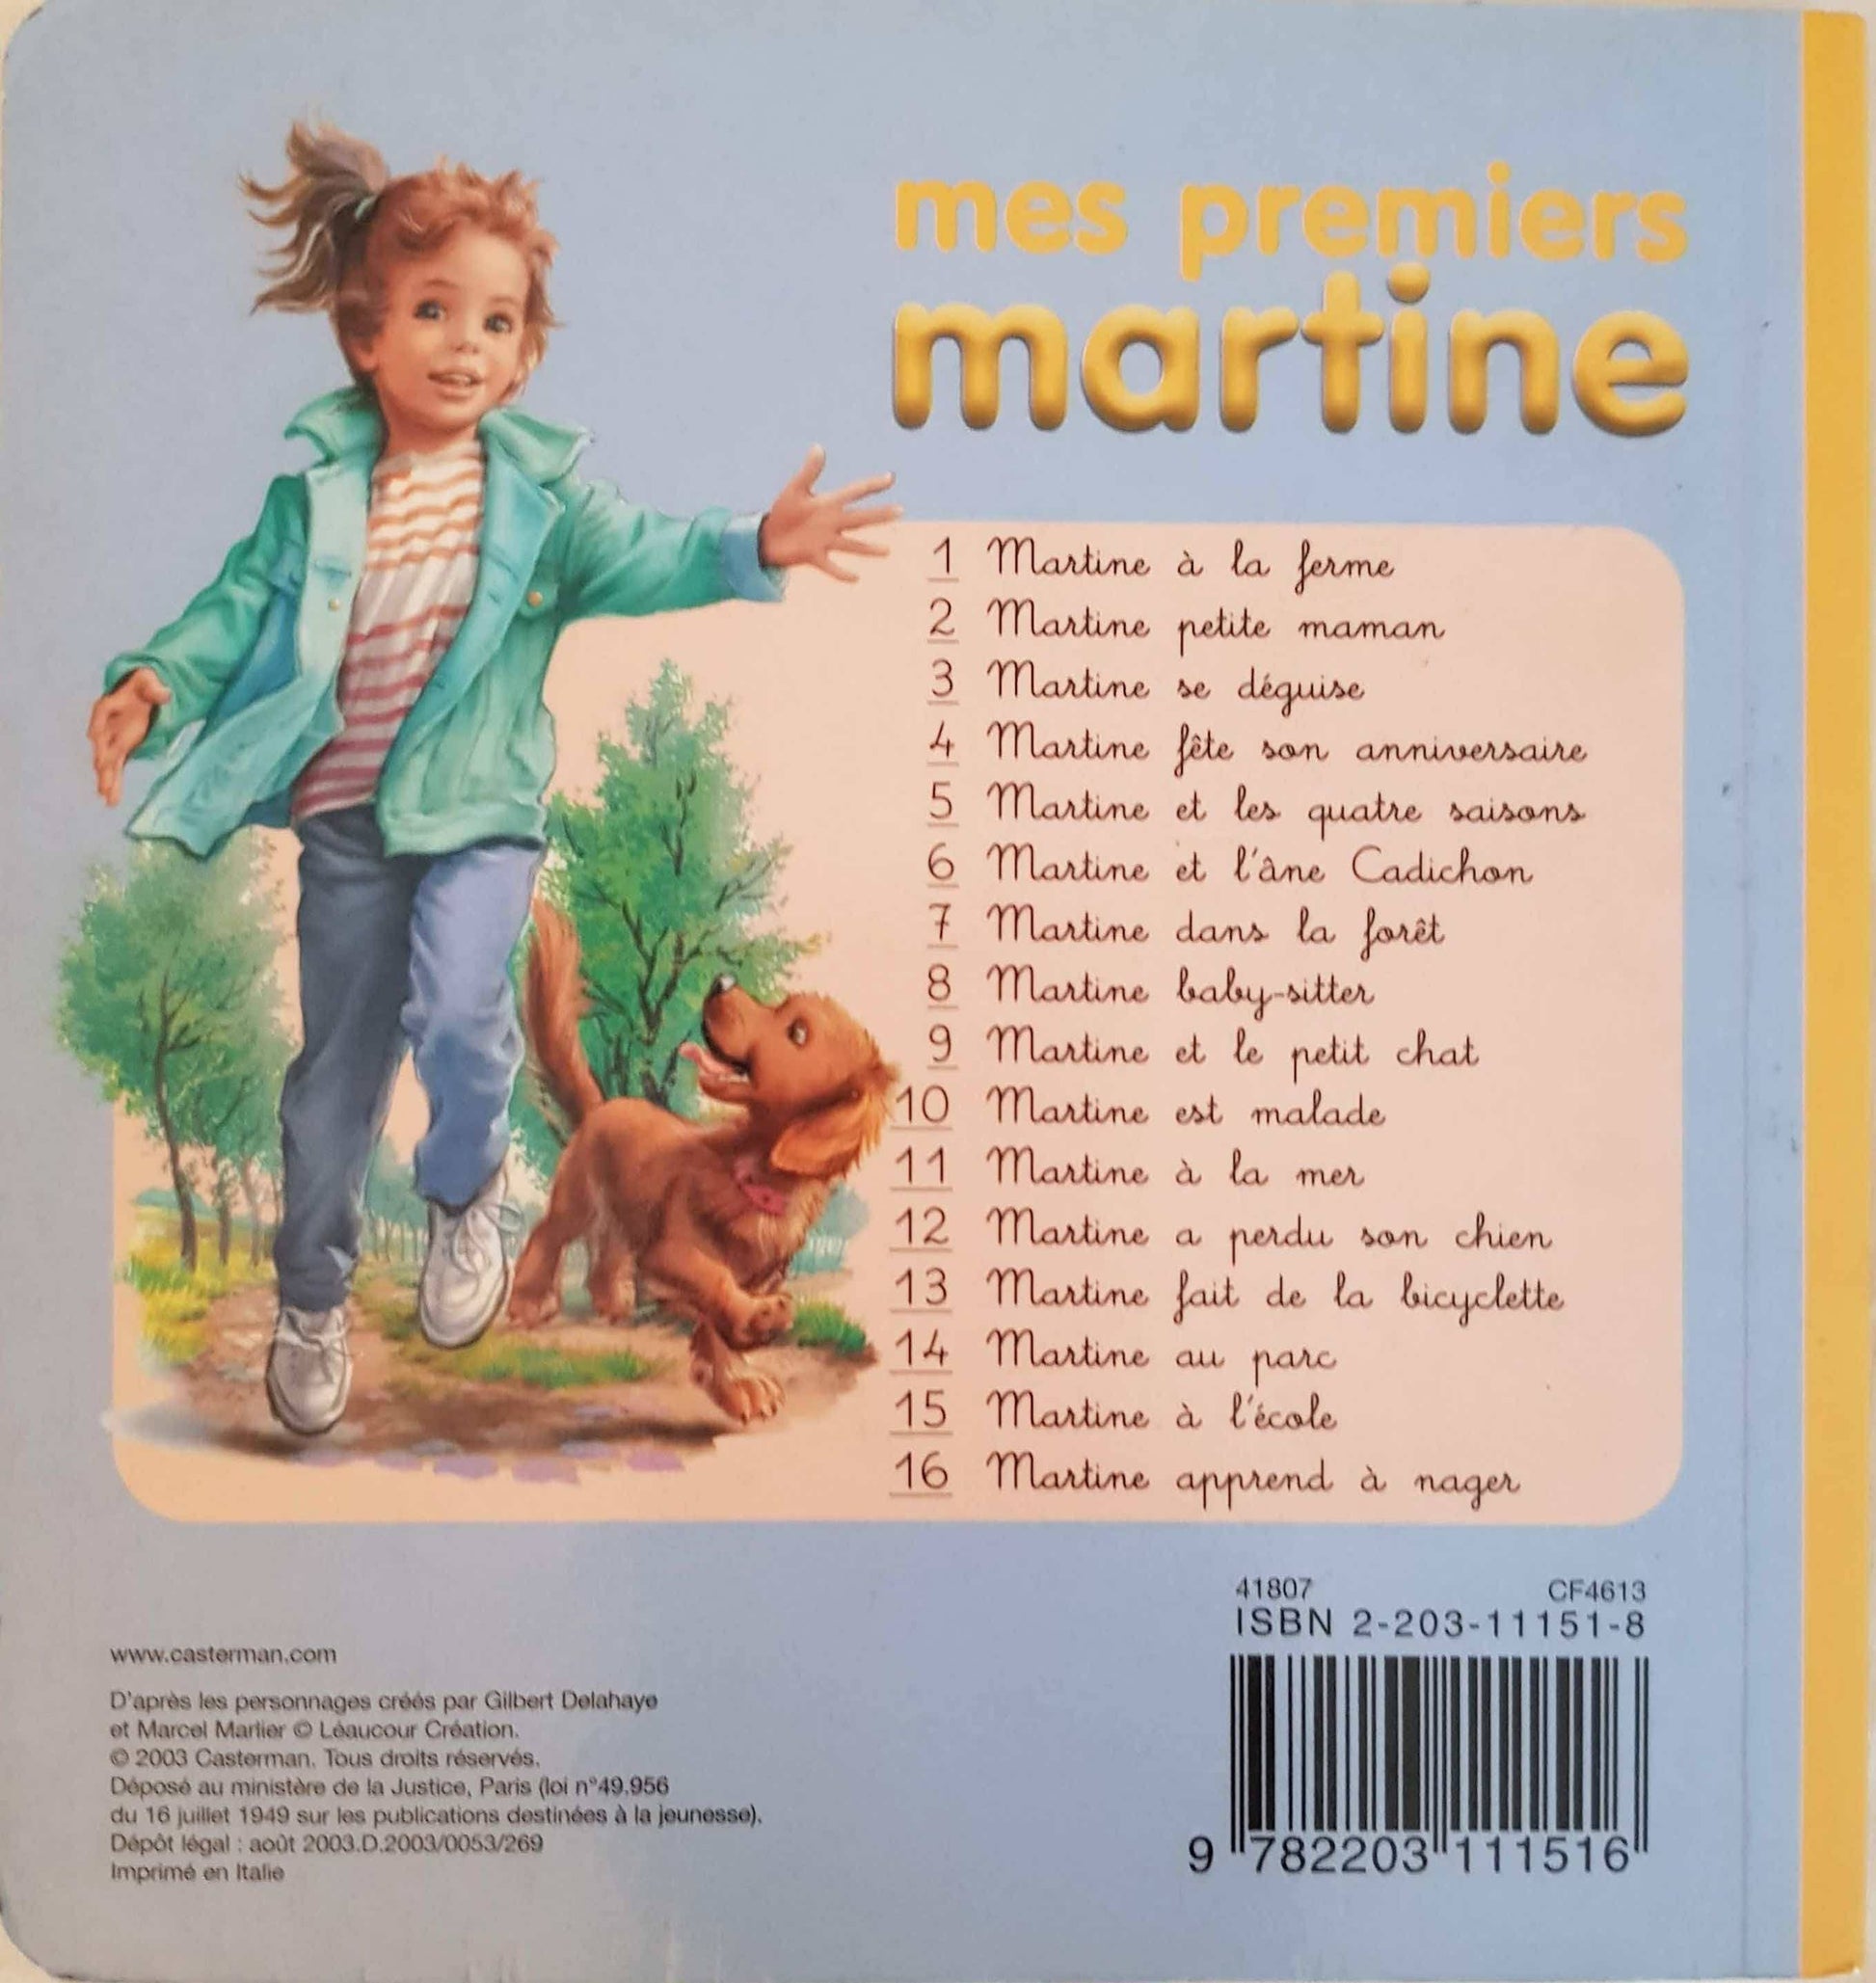 Martine à la Mer Like New Martine  (4619395039287)